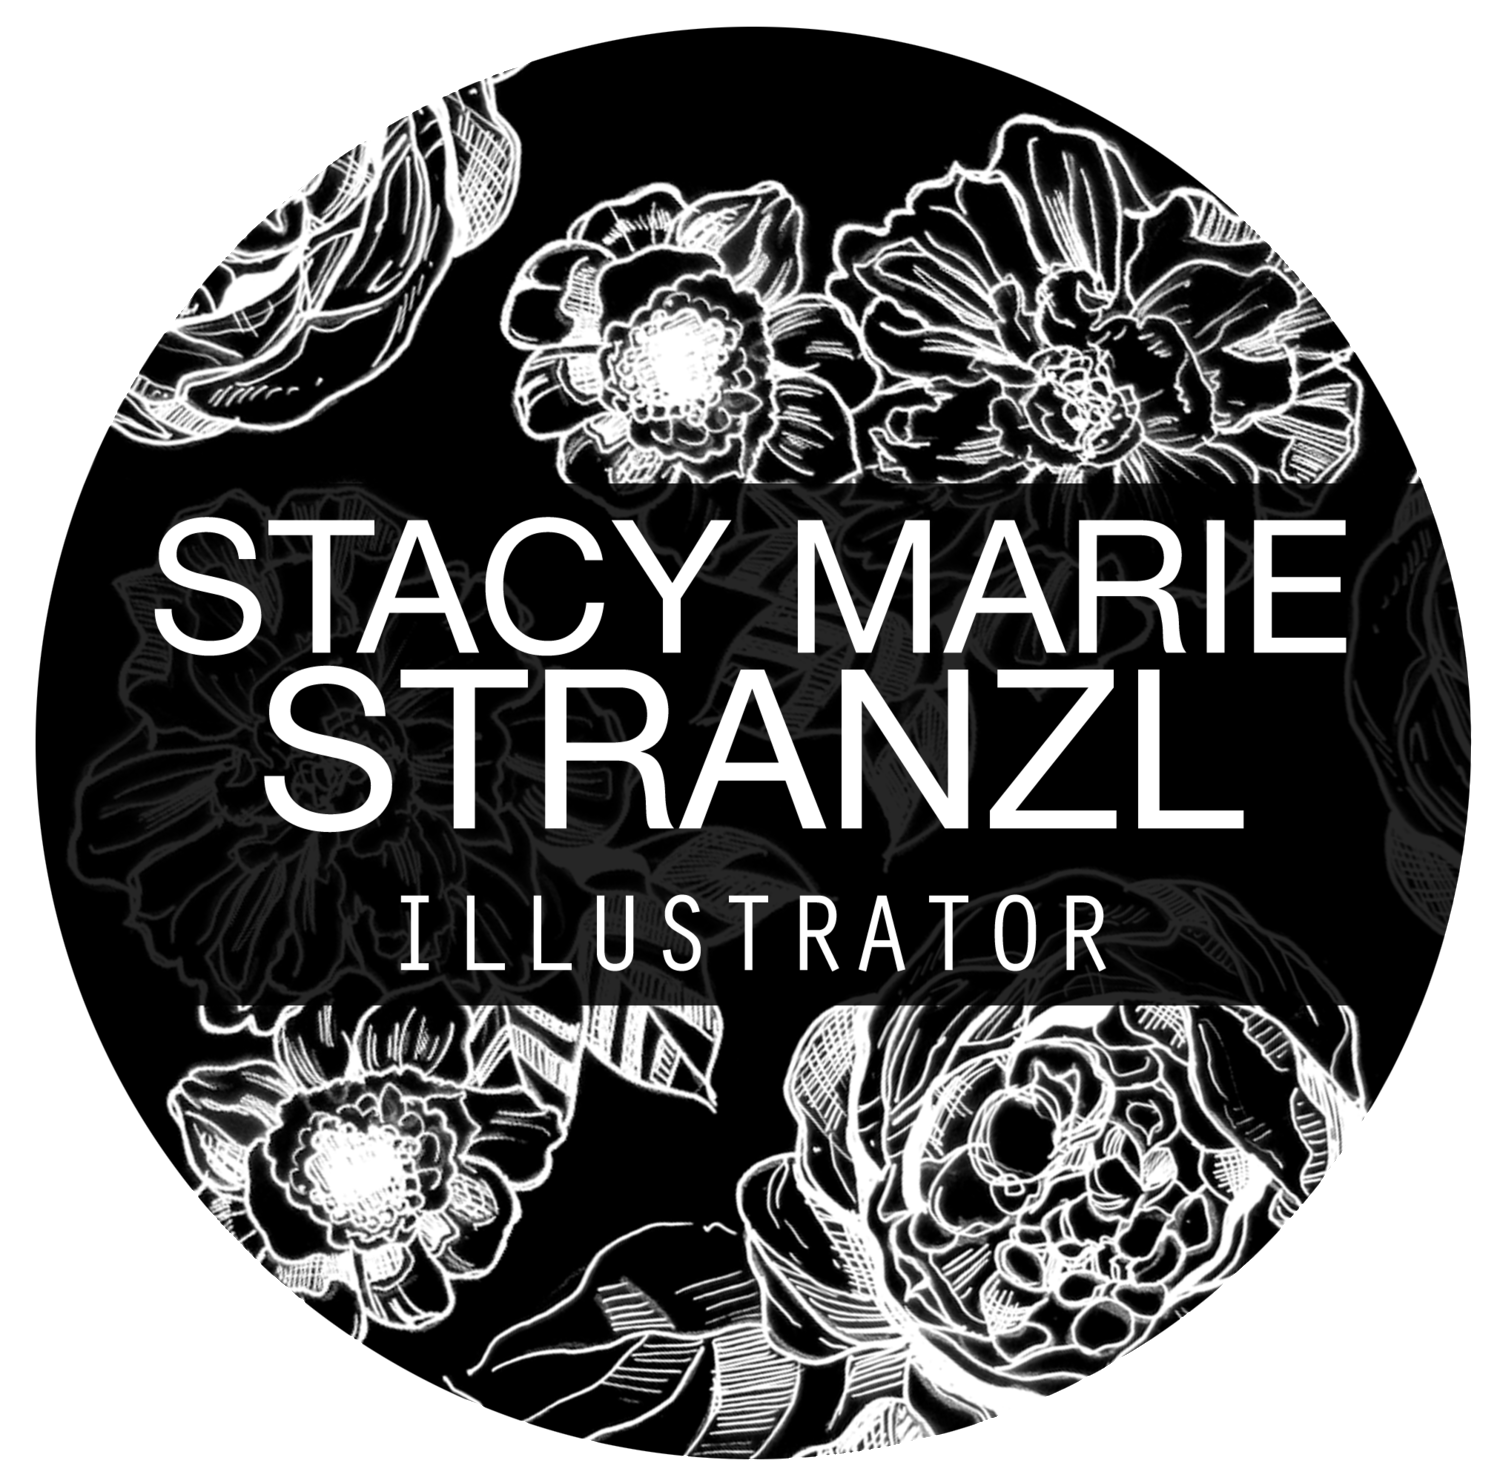 Stacy Marie Stranzl